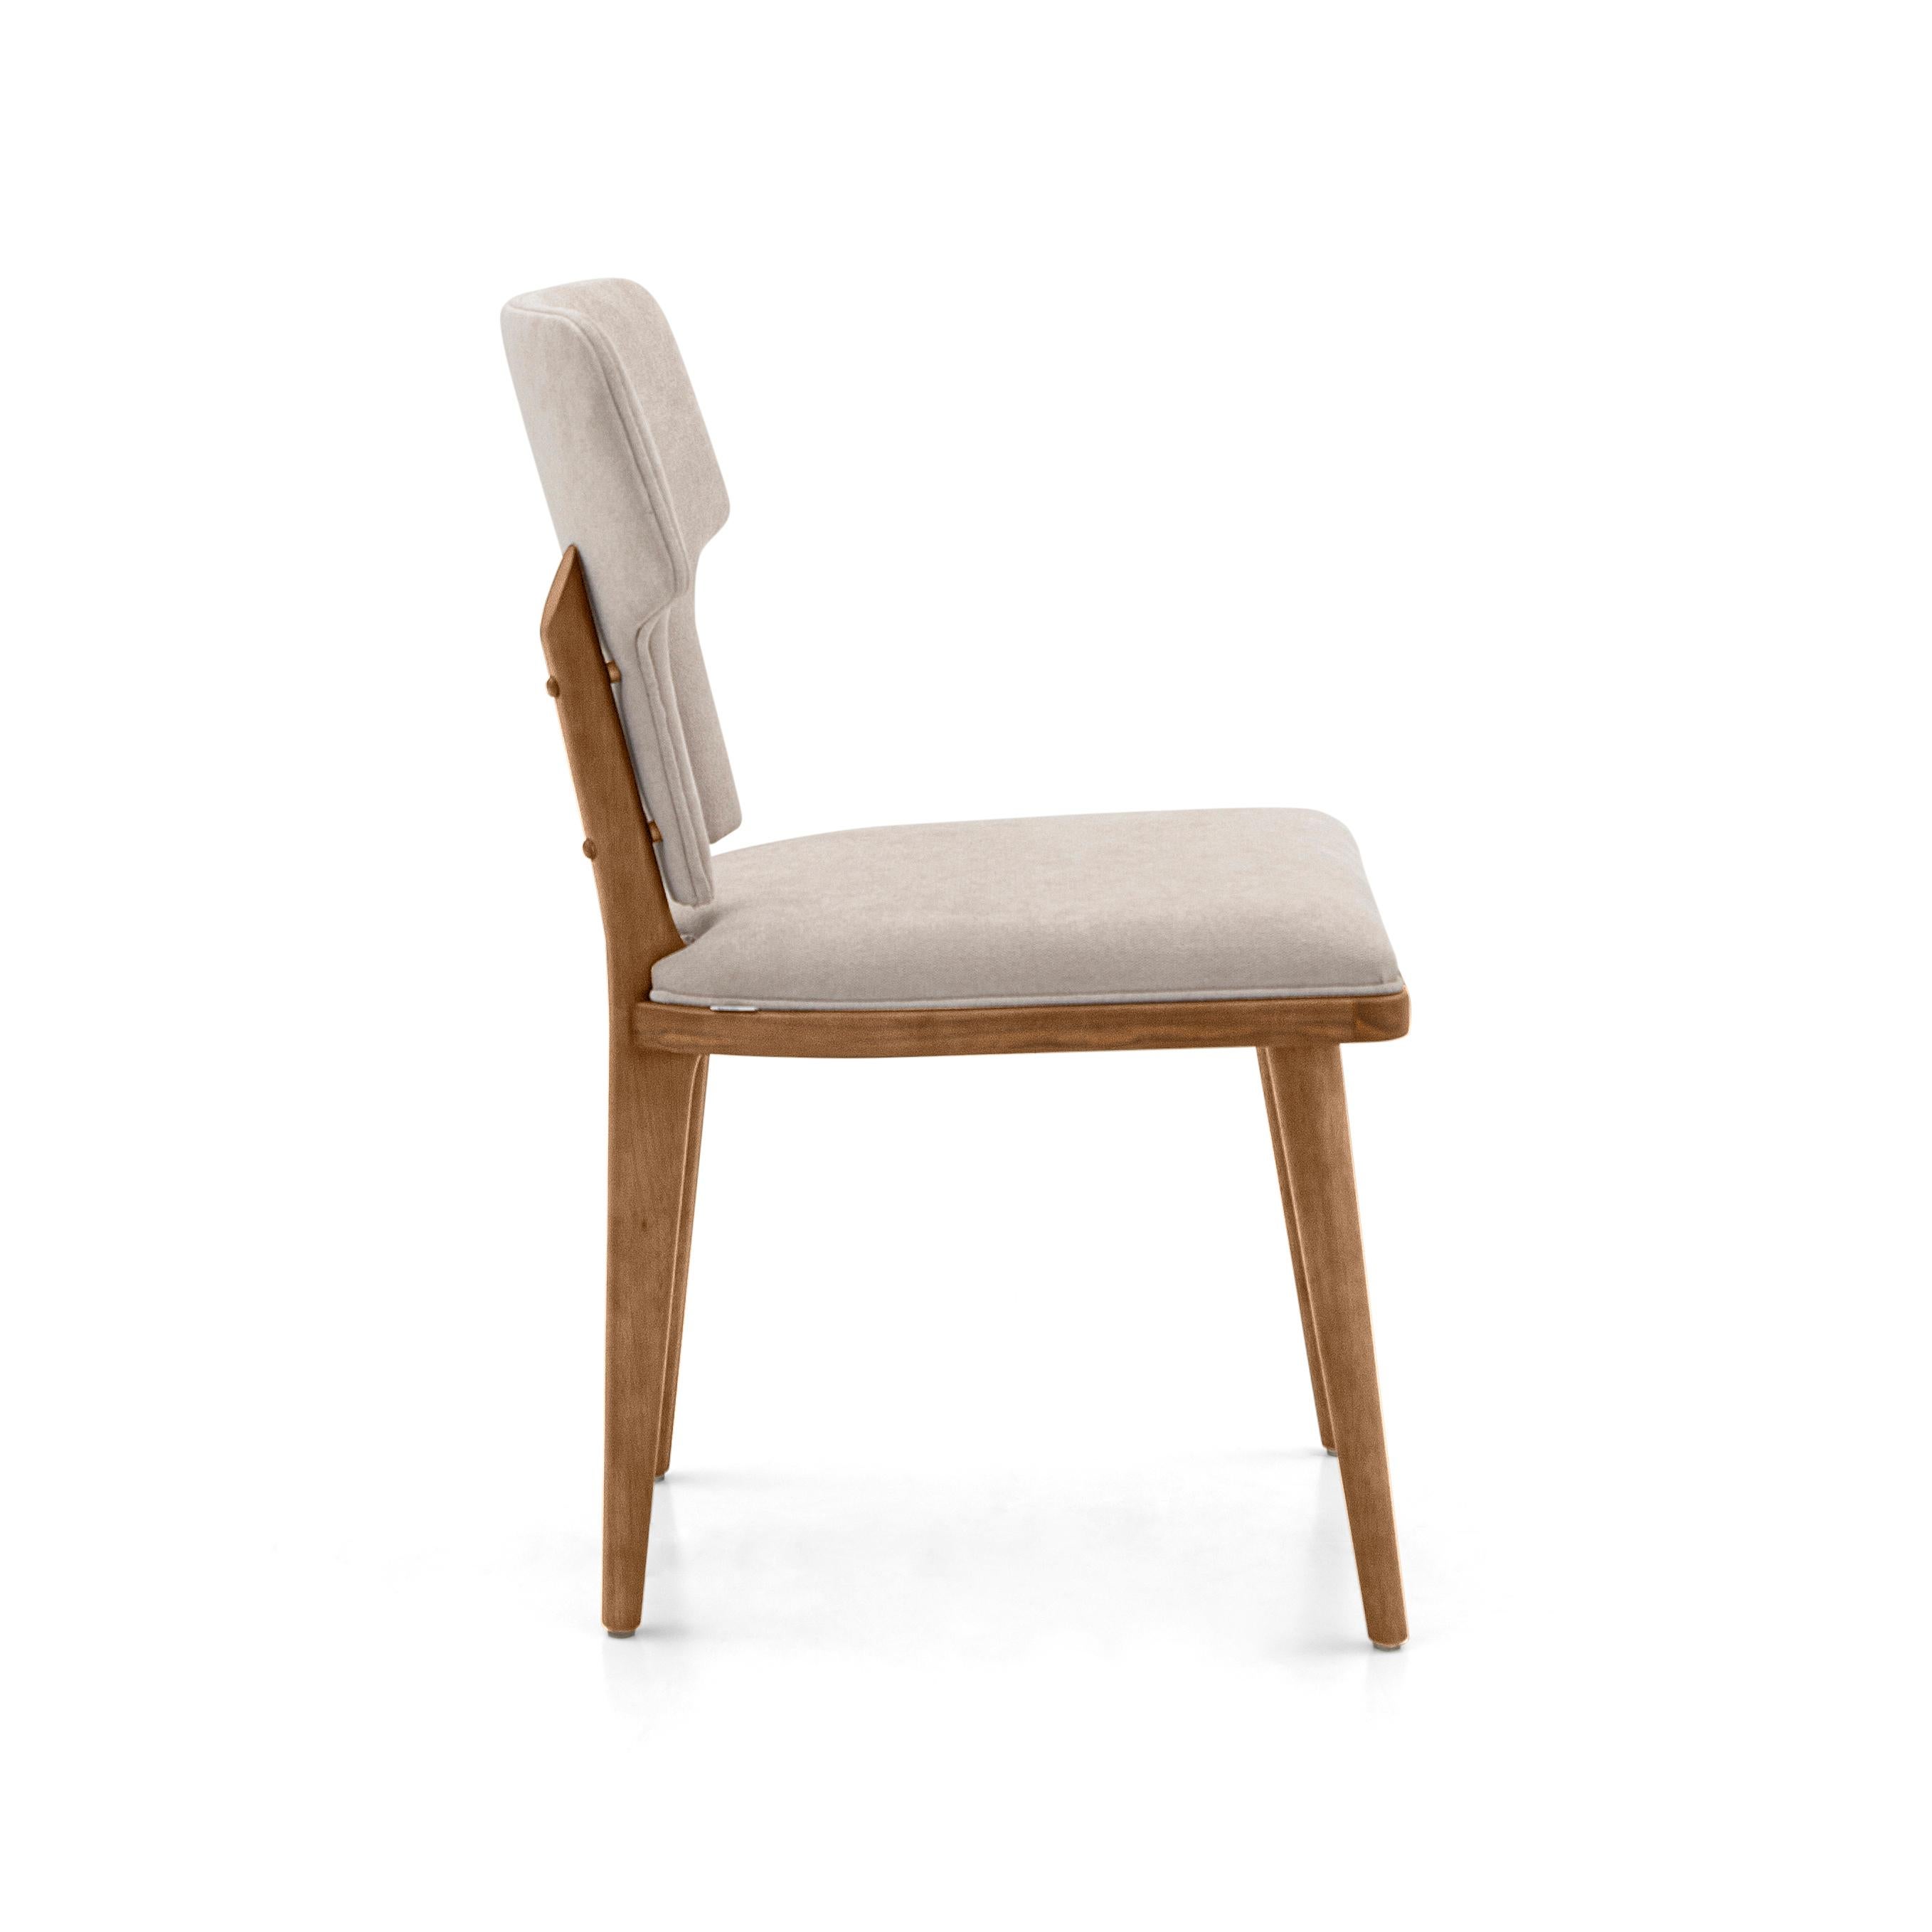 La chaise de salle à manger Fork a été fabriquée par notre équipe Uultis avec un tissu beige clair et une finition Uultis en bois de teck pour les pieds. Notre formidable équipe chez Uultis a pensé à chaque petit détail pour que cette chaise de